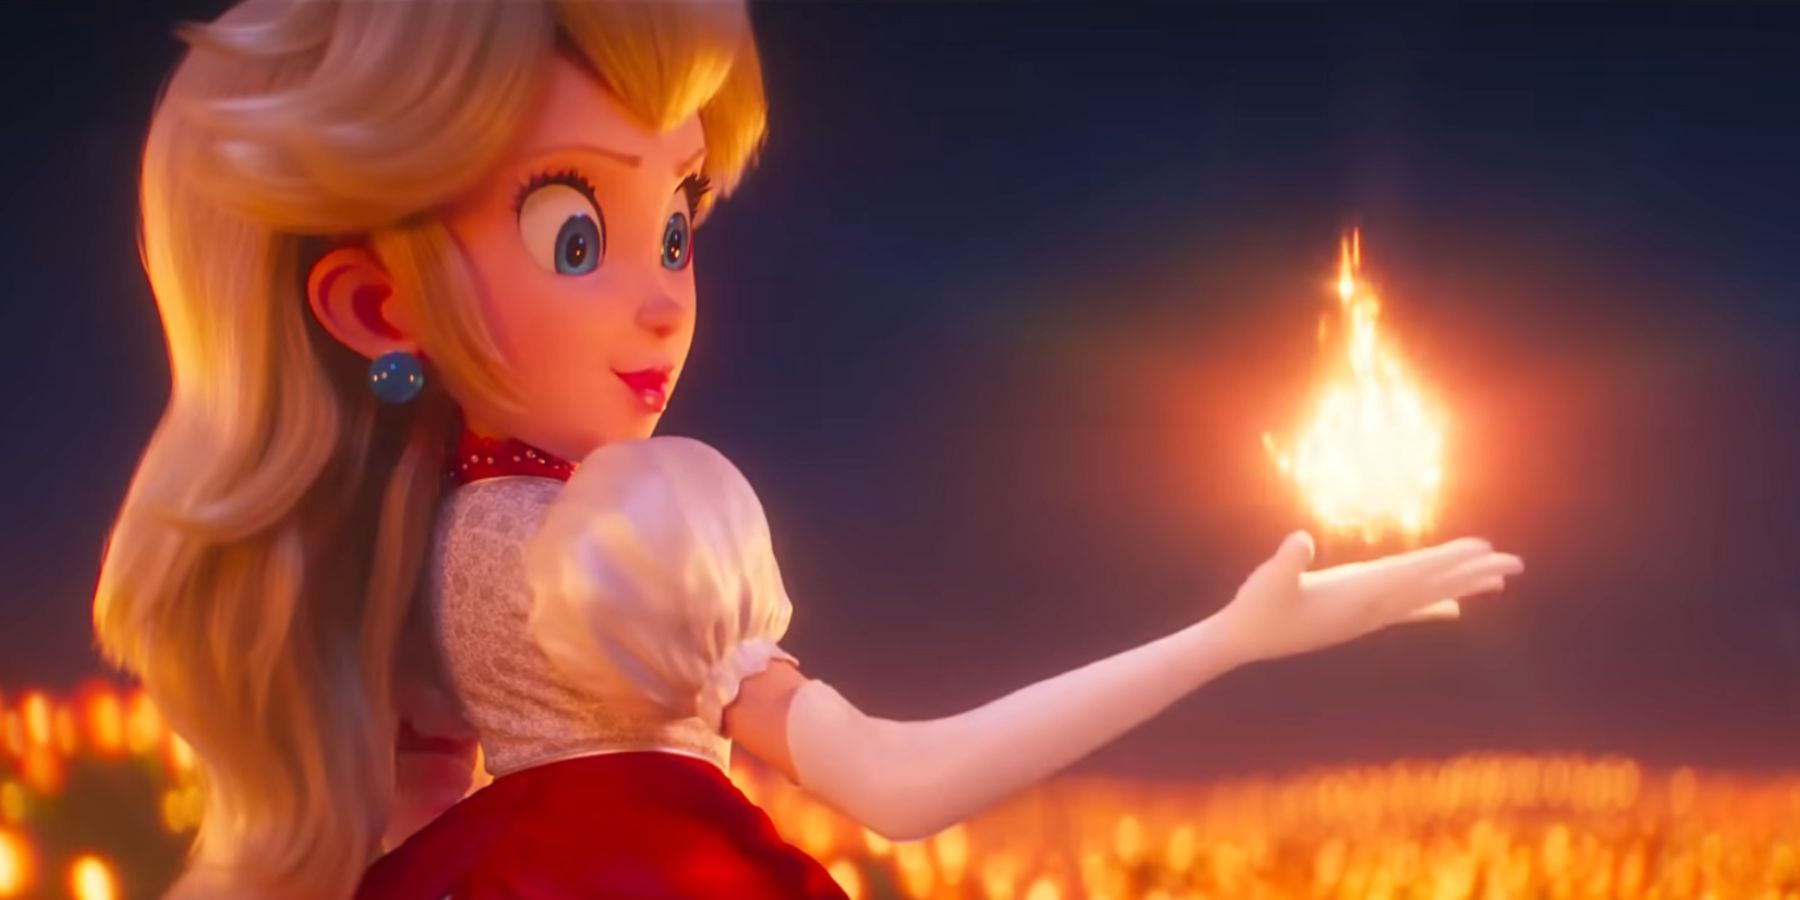 La princesse Peach tient le feu dans la paume de sa main dans le film d'animation Super Mario.